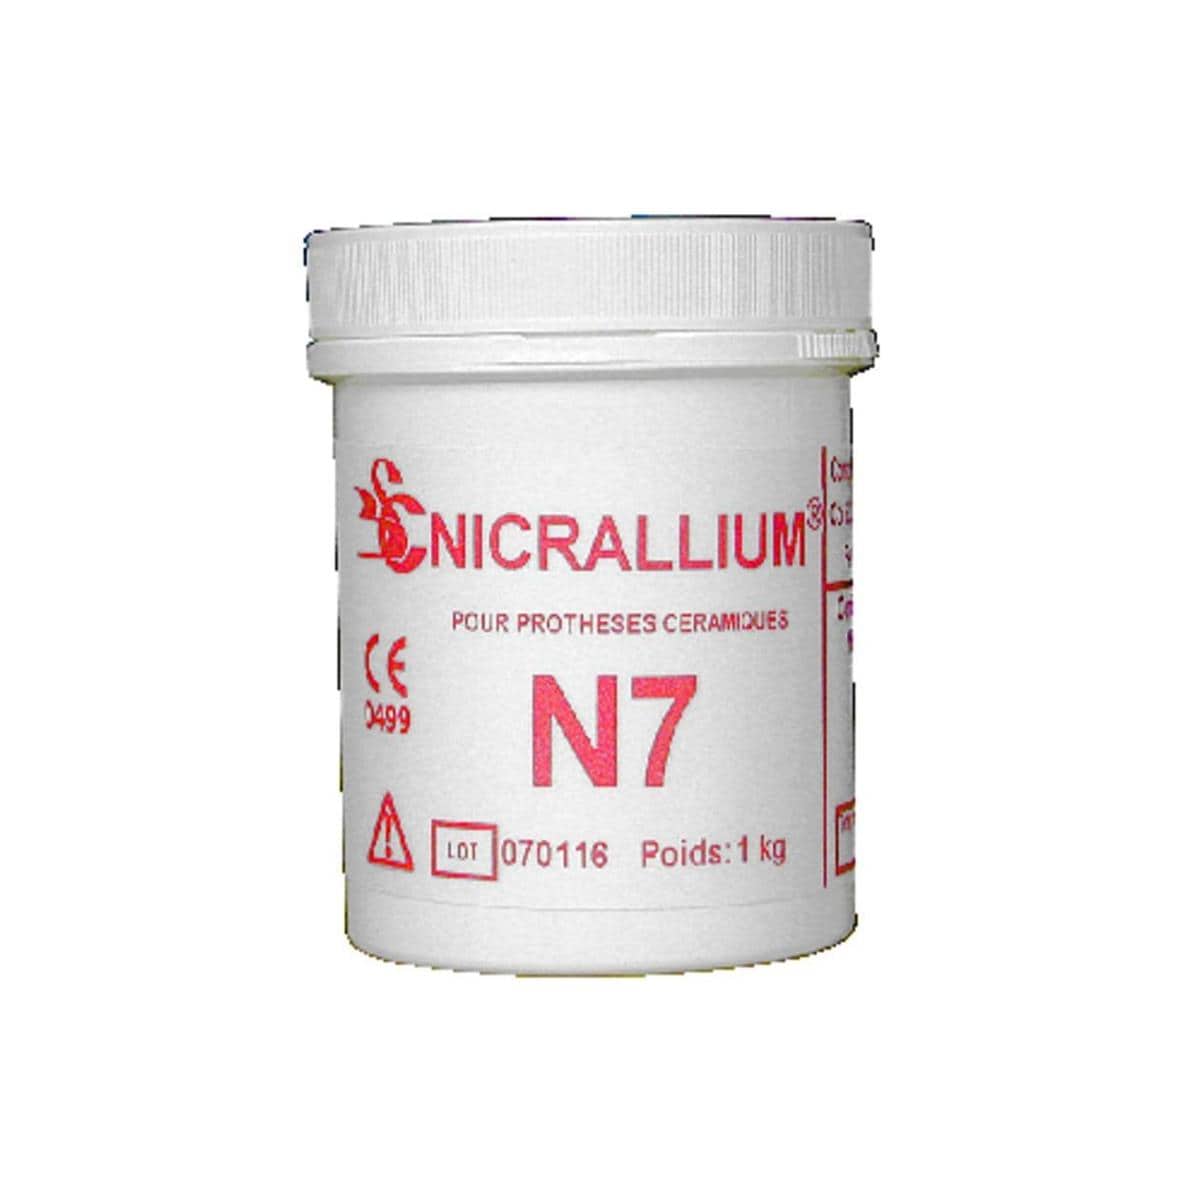 Nicrallium N7 BCS - La bote de 1 kg